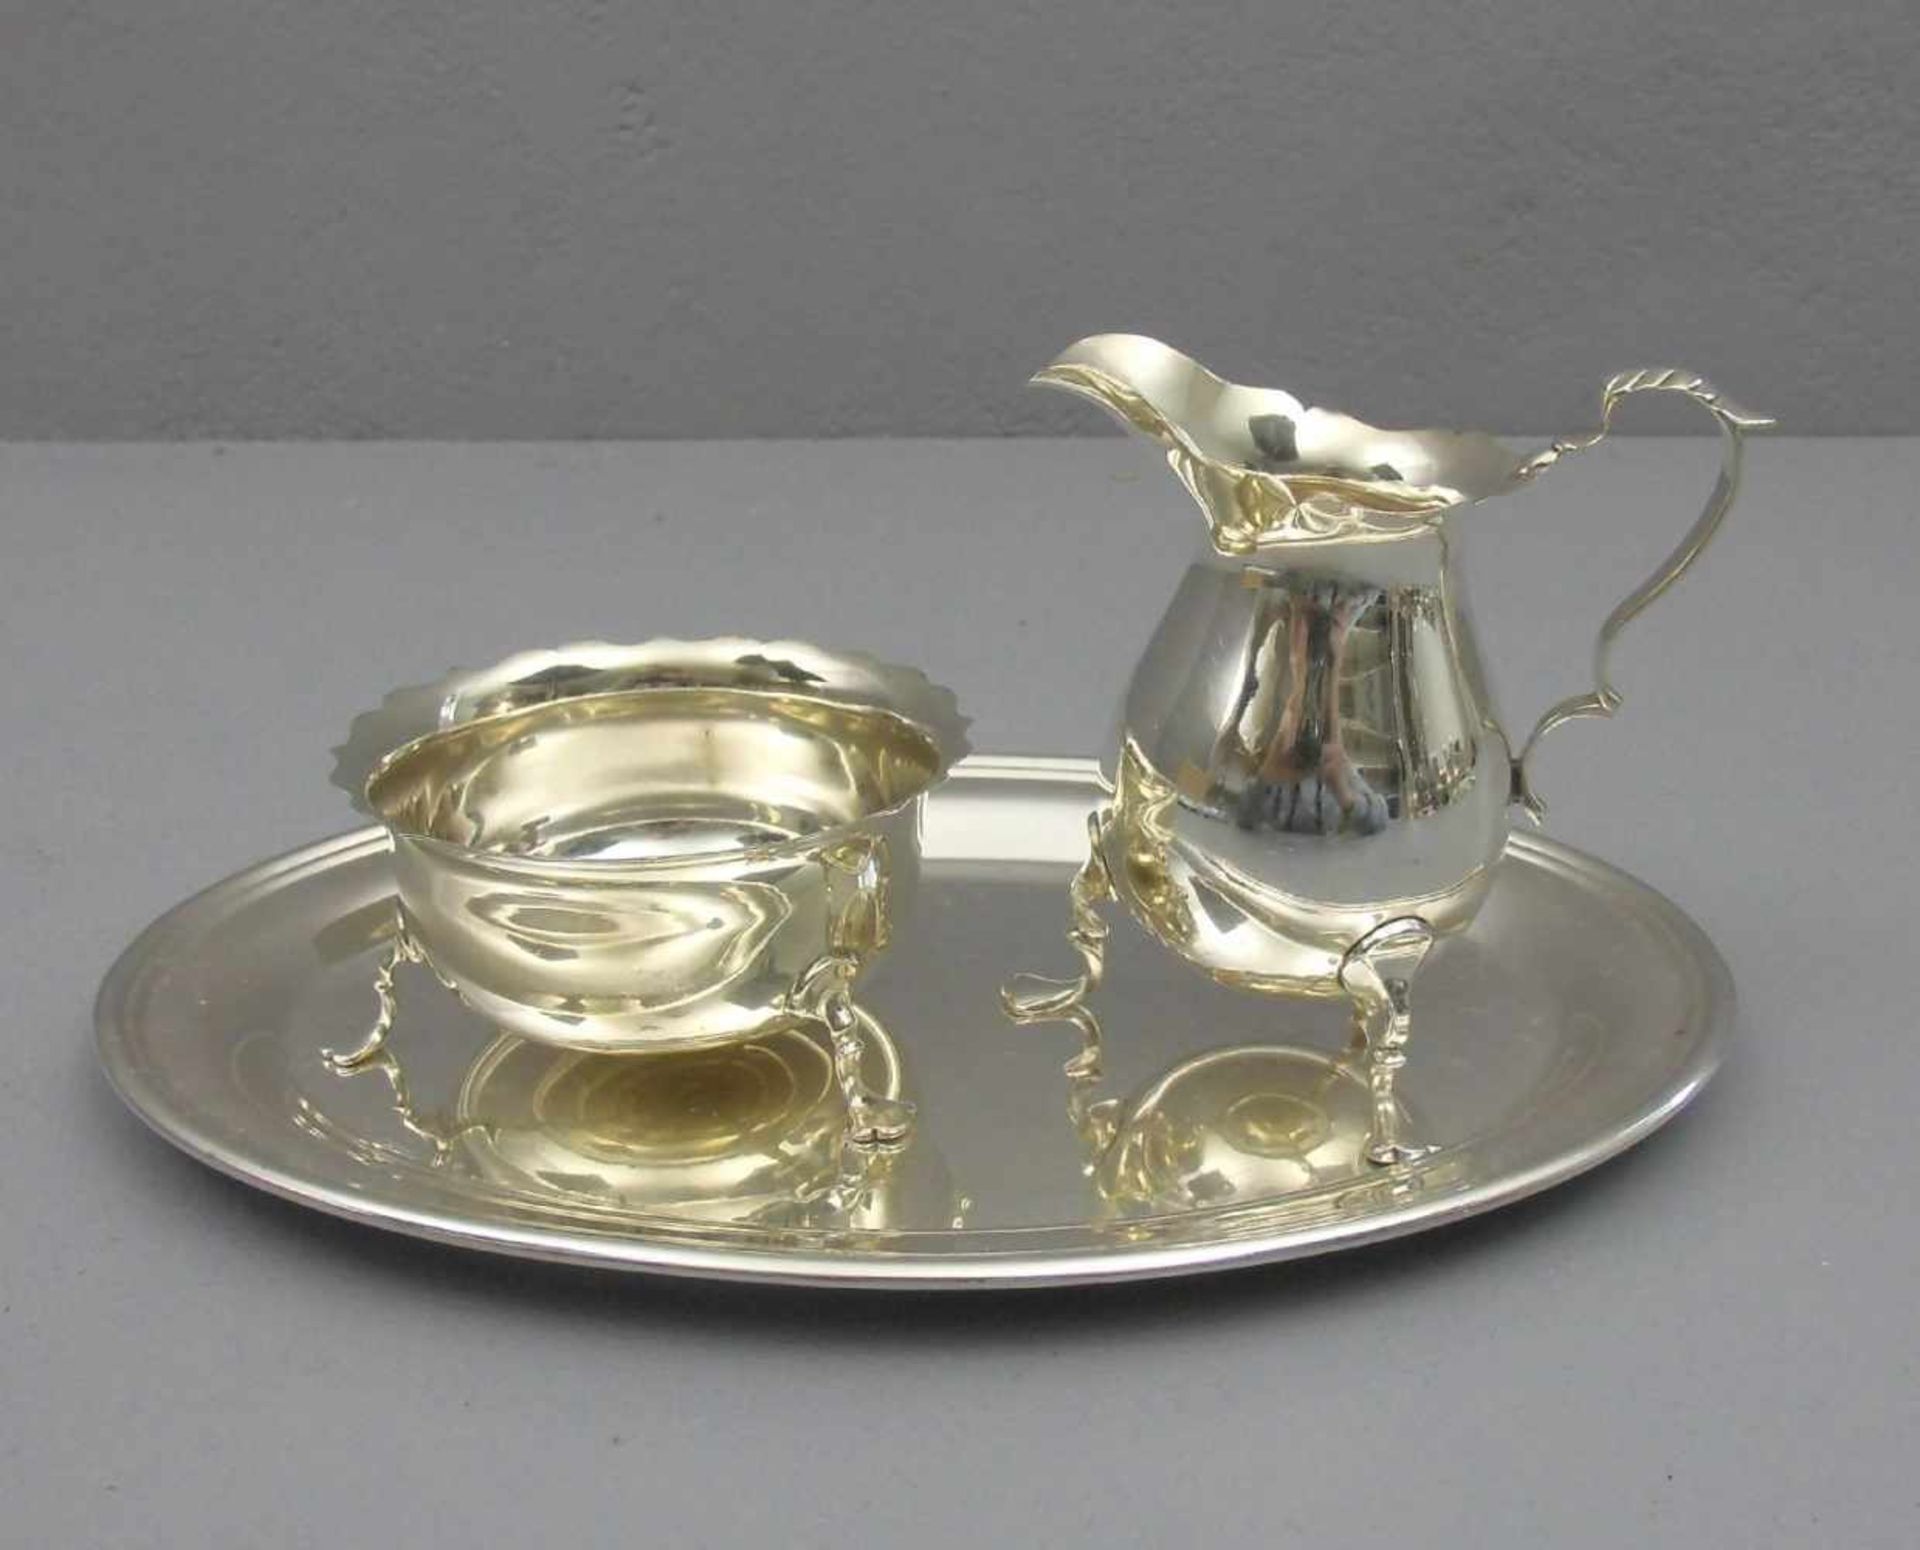 MILCHKÄNNCHEN UND ZUCKERDOSE AUF TABLETT / milk jug and sugar bowl on a tray, England,